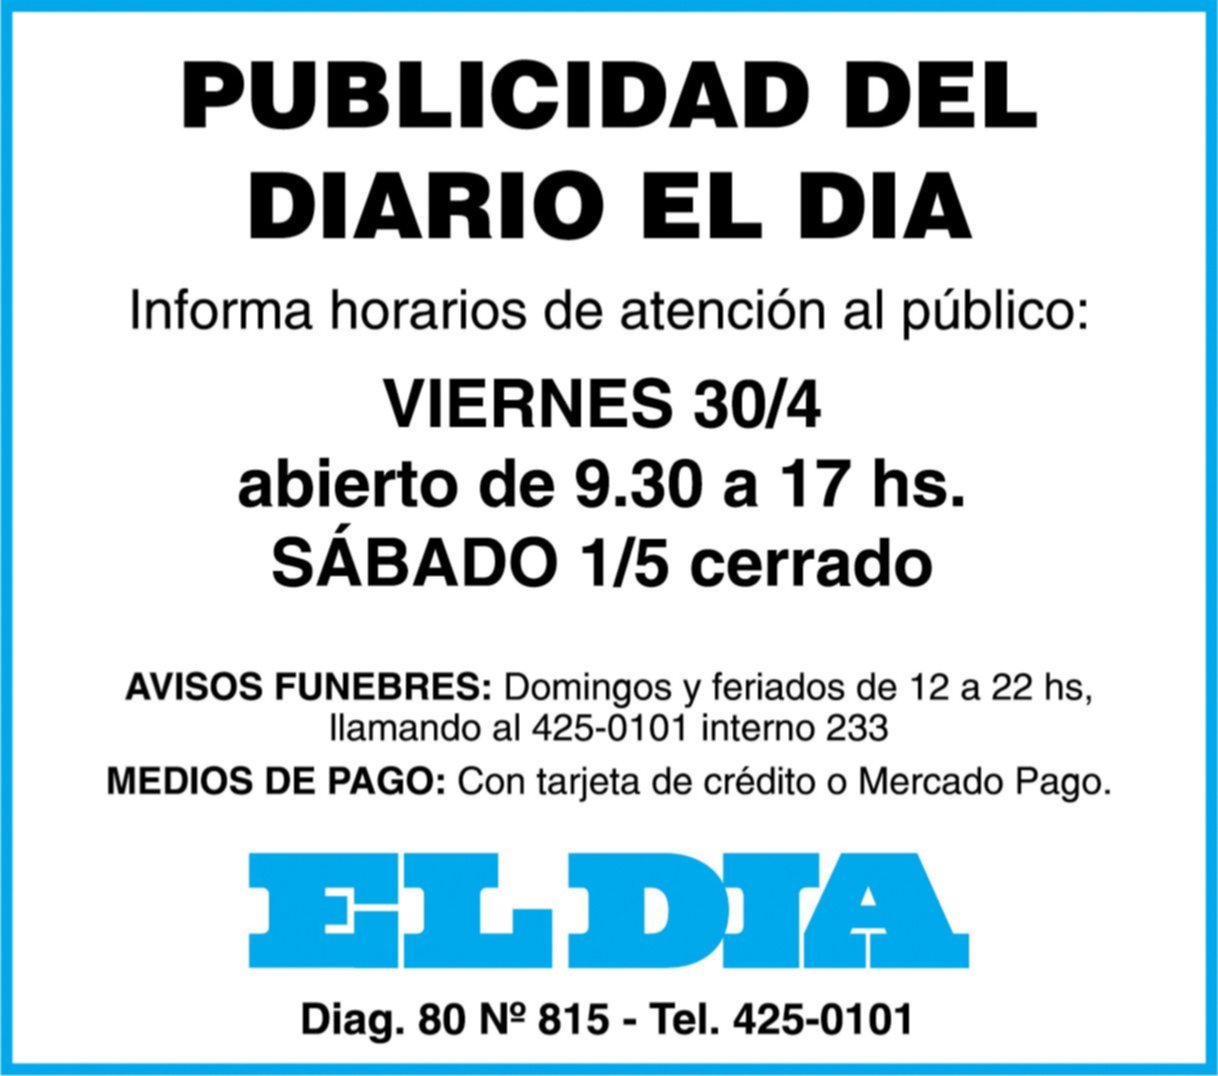 Publicidad en diario EL DIA: este sábado 1 de mayo, cerrado